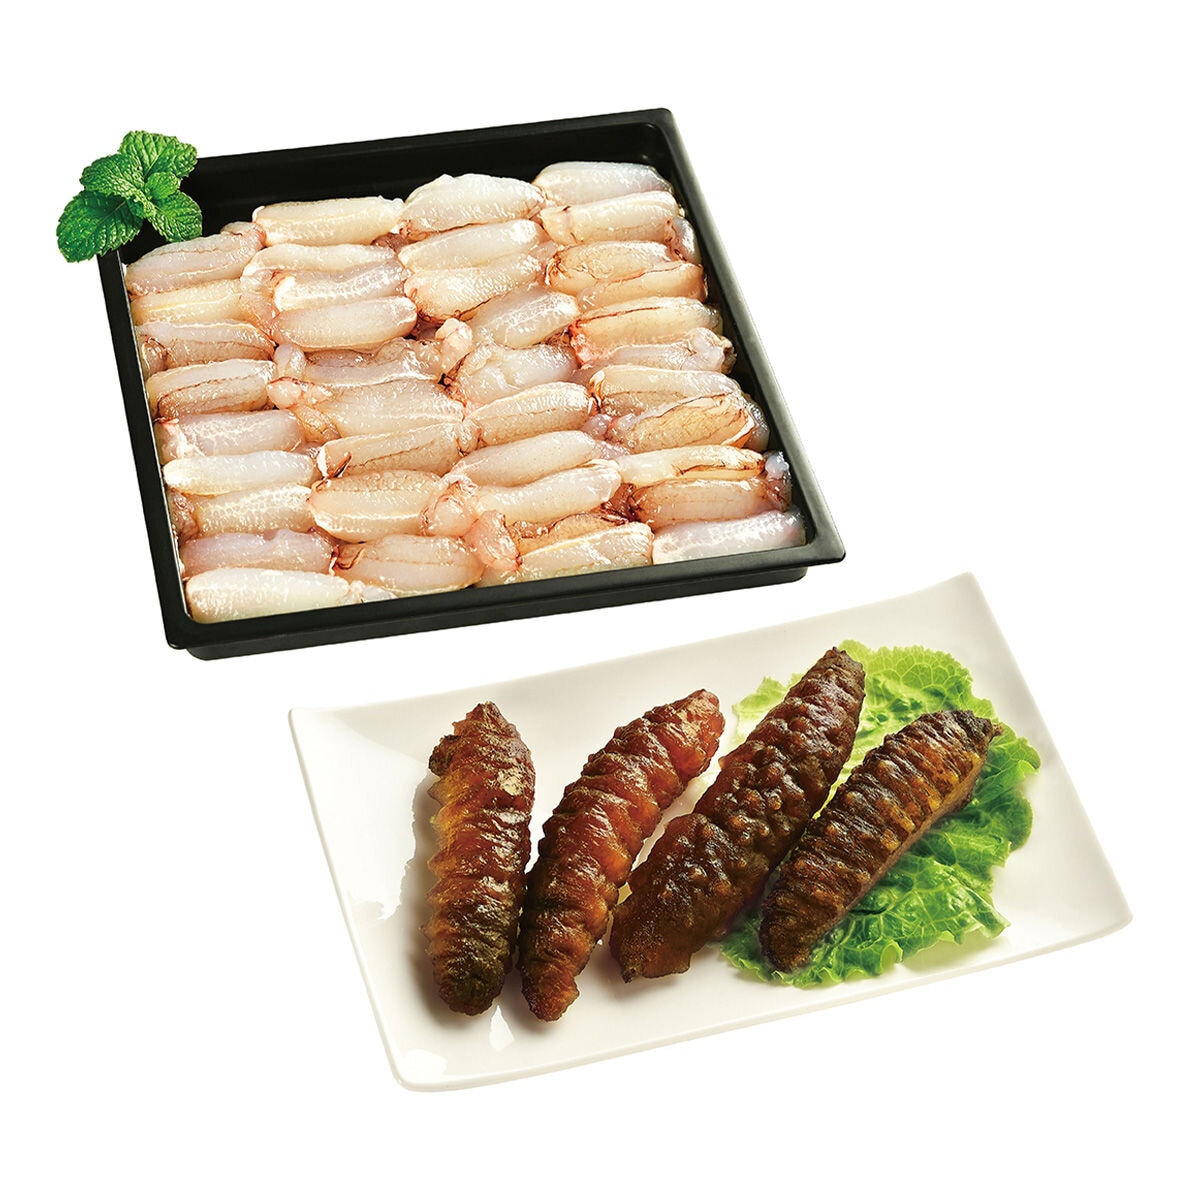 冷凍鮮味海鮮組合 海參 + 蟹管肉